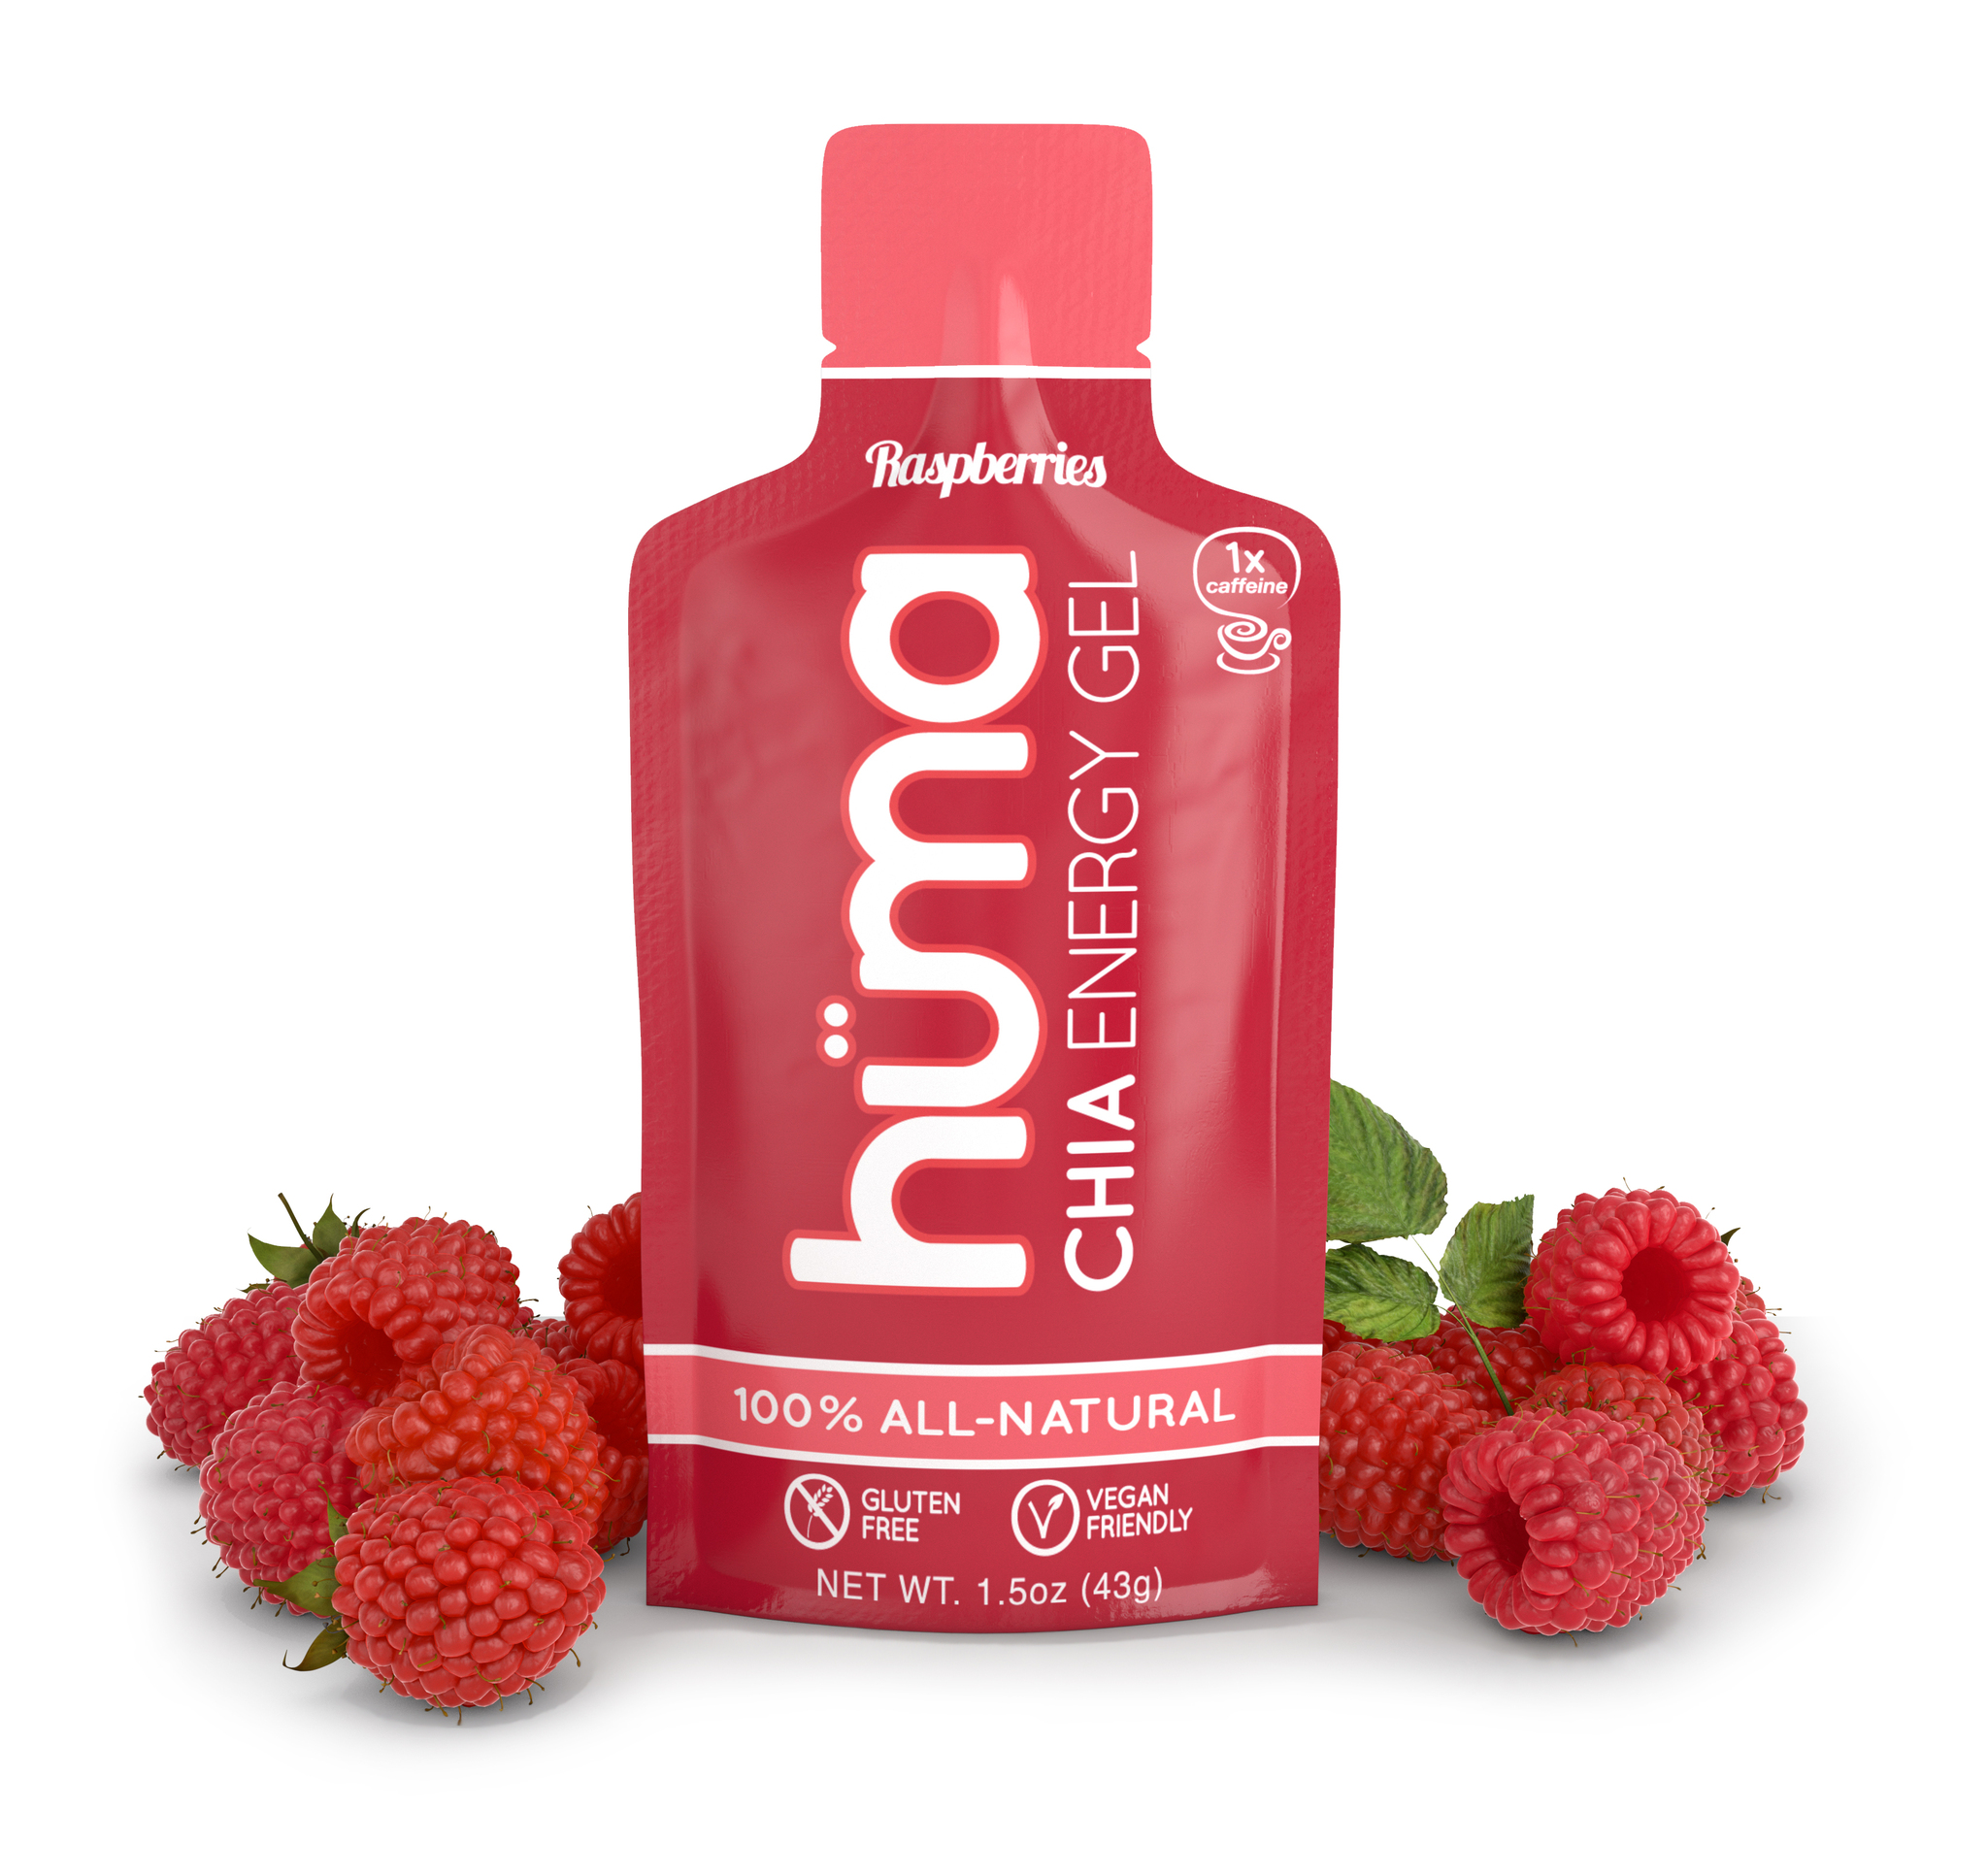 Huma Gel - Raspberries (koffein) - 4-pack